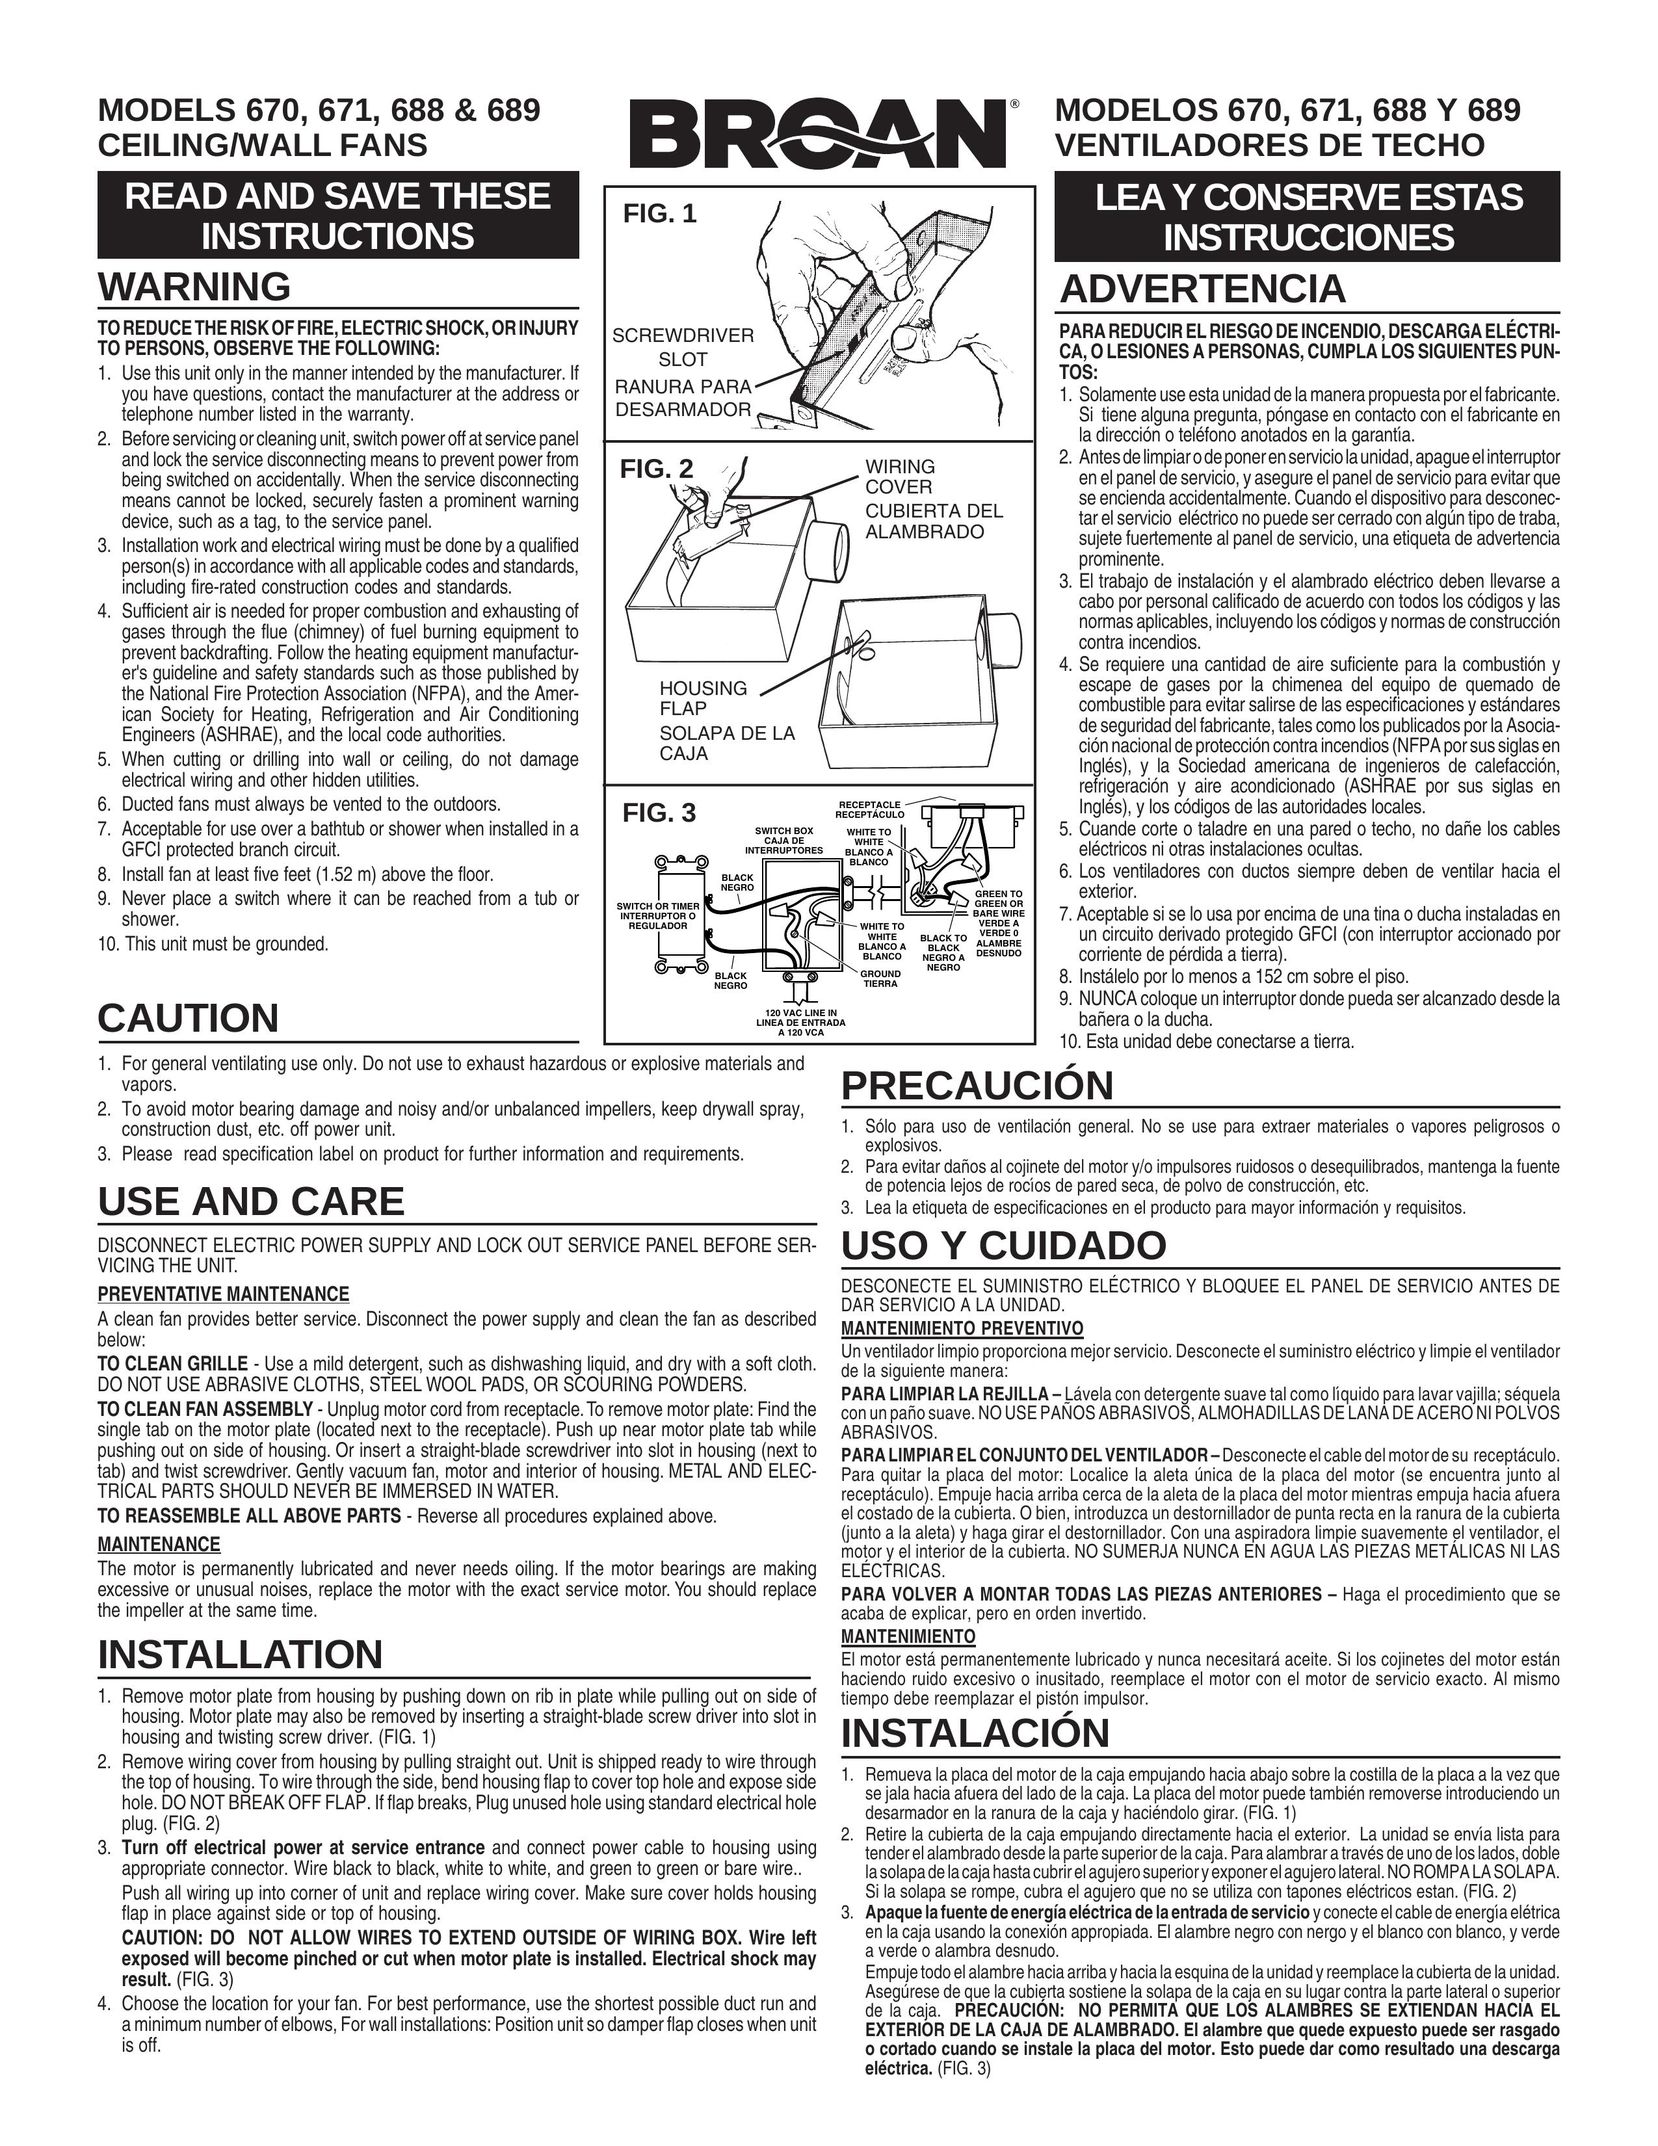 Broan 670 Fan User Manual